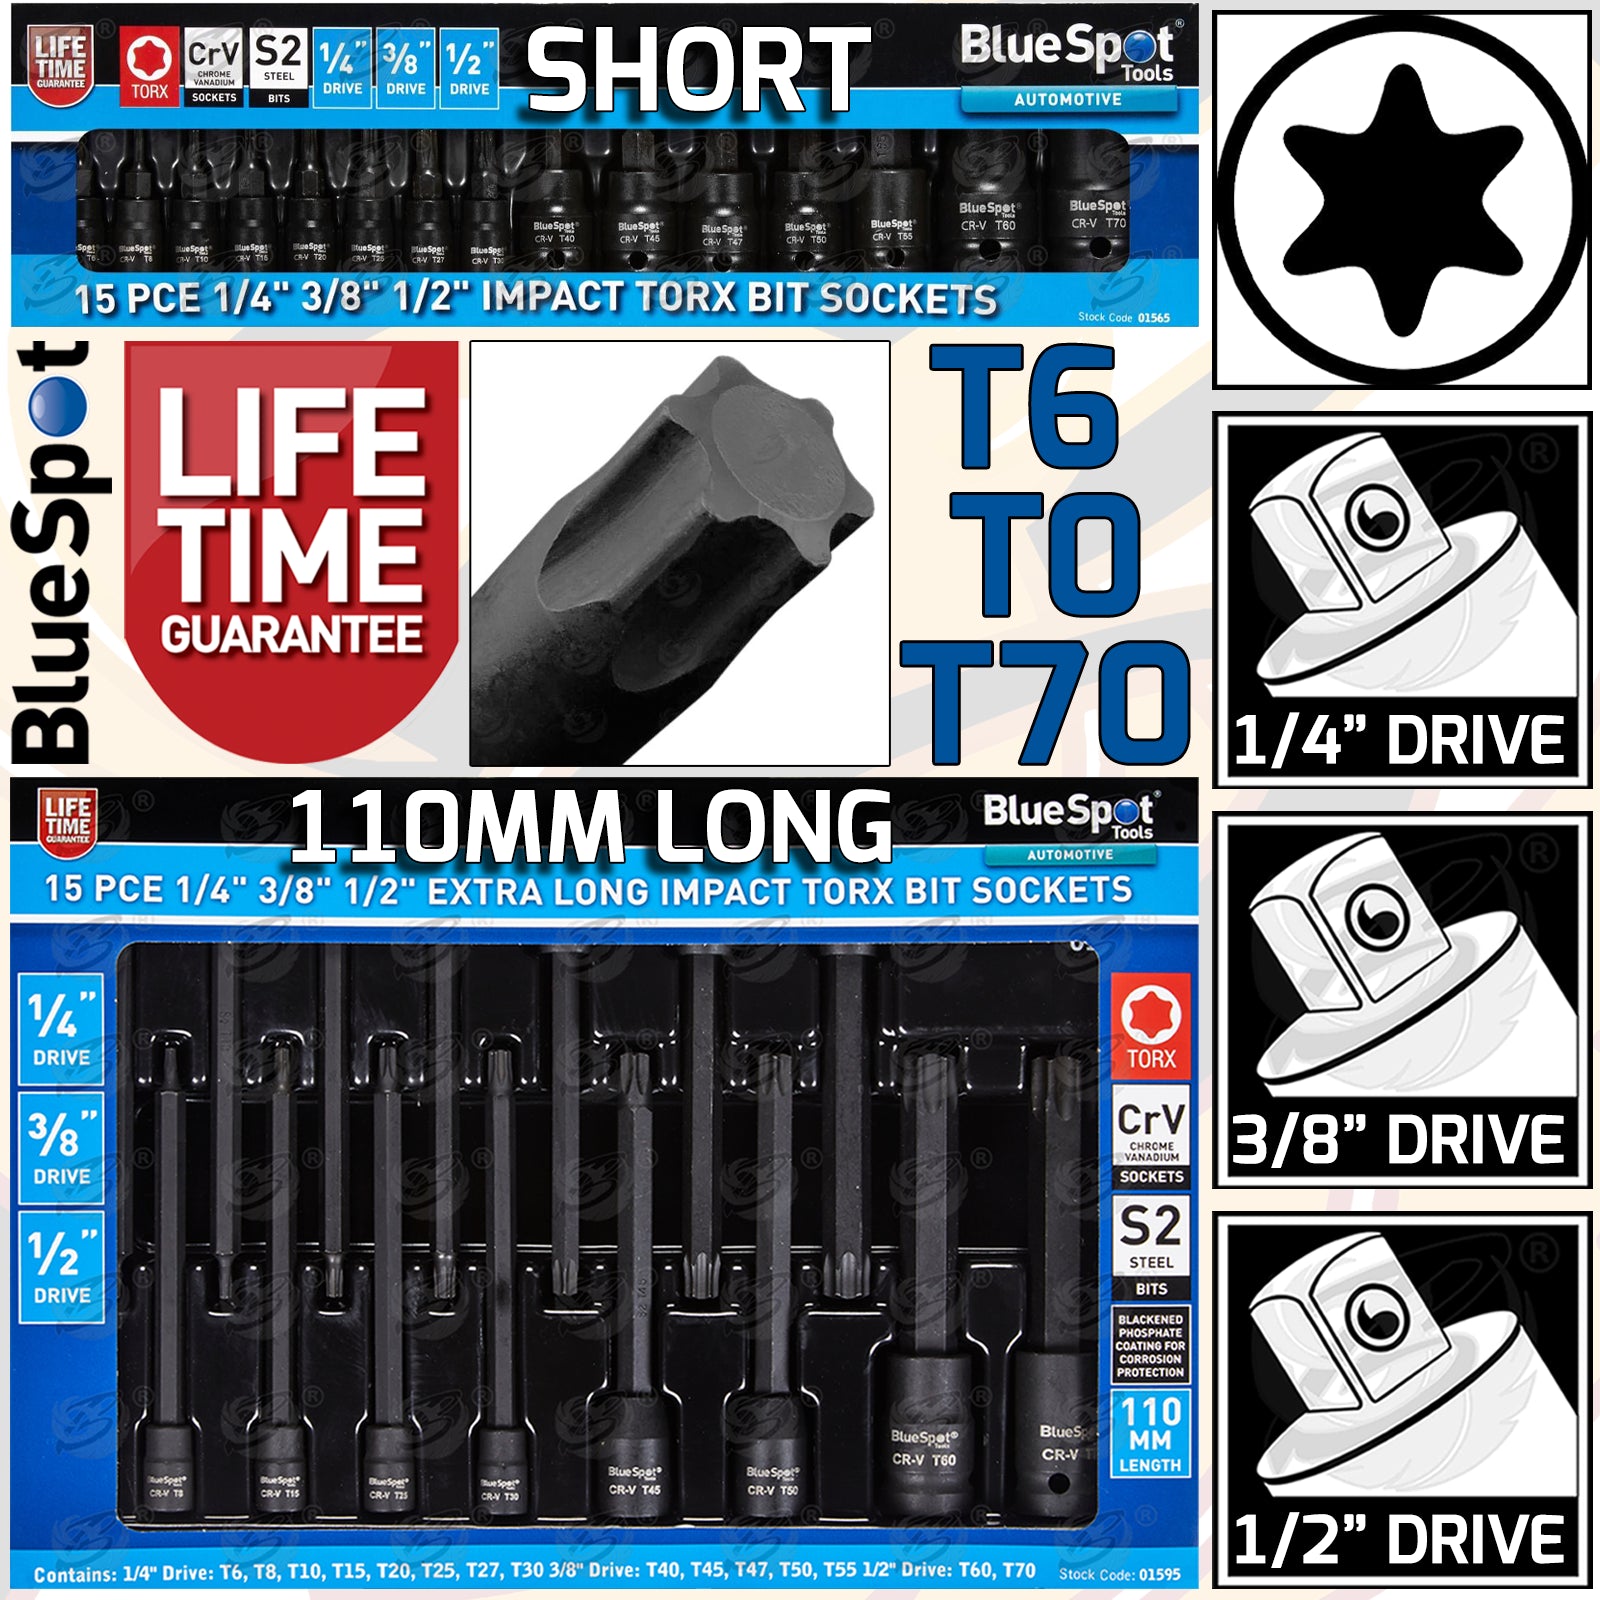 BLUESPOT 30PCS 1/4" & 3/8" & 1/2" DRIVE IMPACT TORX BIT SOCKETS T6 - T70